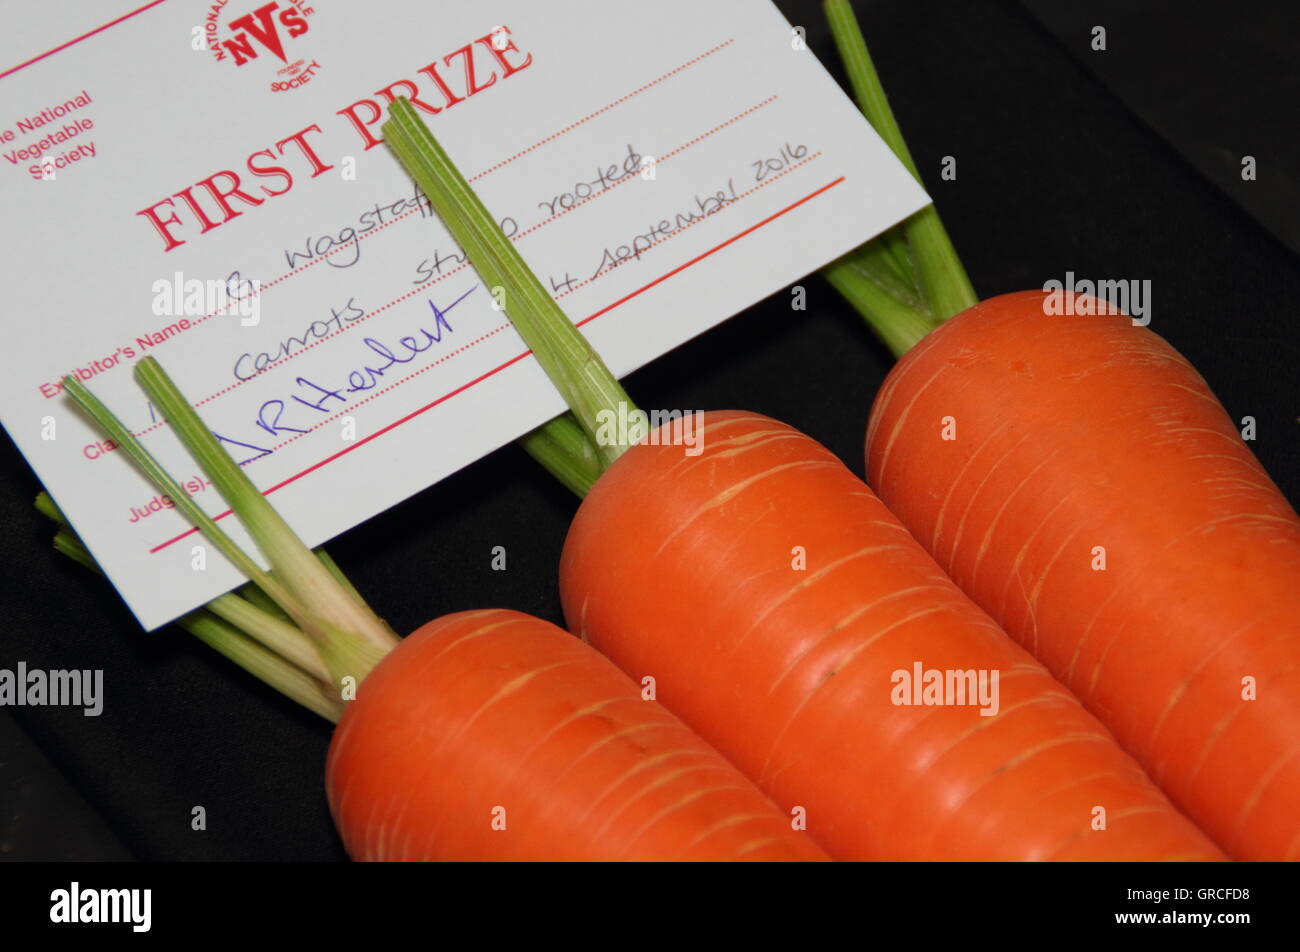 Appena raccolto 'Sweet candela' carote net il primo premio in un tradizionale britannica la frutta e la verdura mostrano, England, Regno Unito Foto Stock